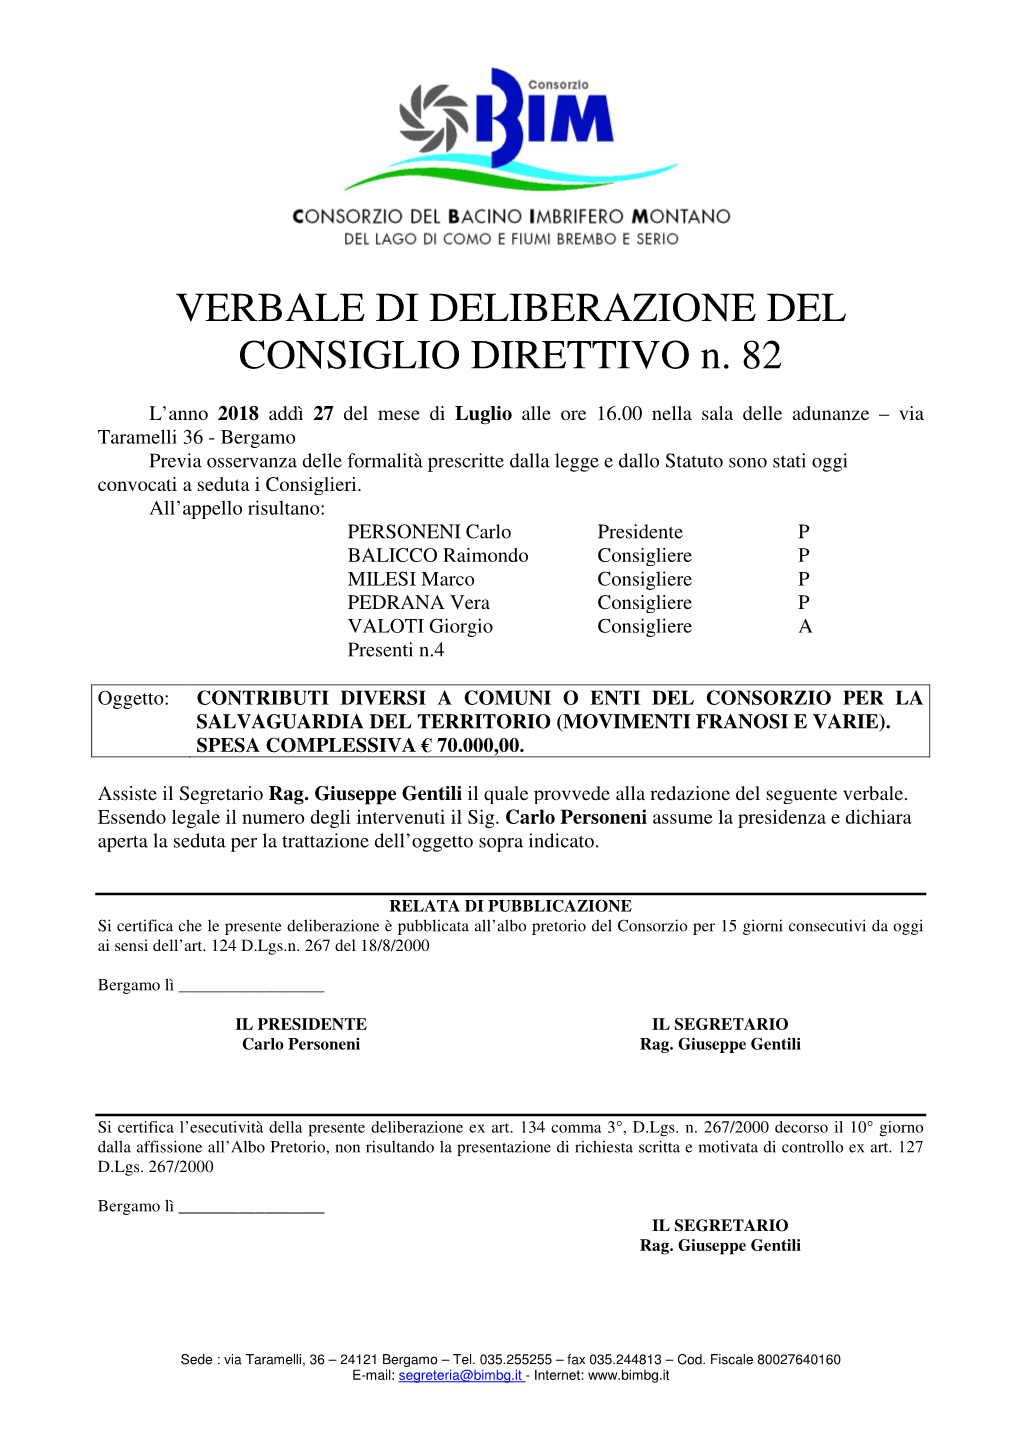 VERBALE DI DELIBERAZIONE DEL CONSIGLIO DIRETTIVO N. 82